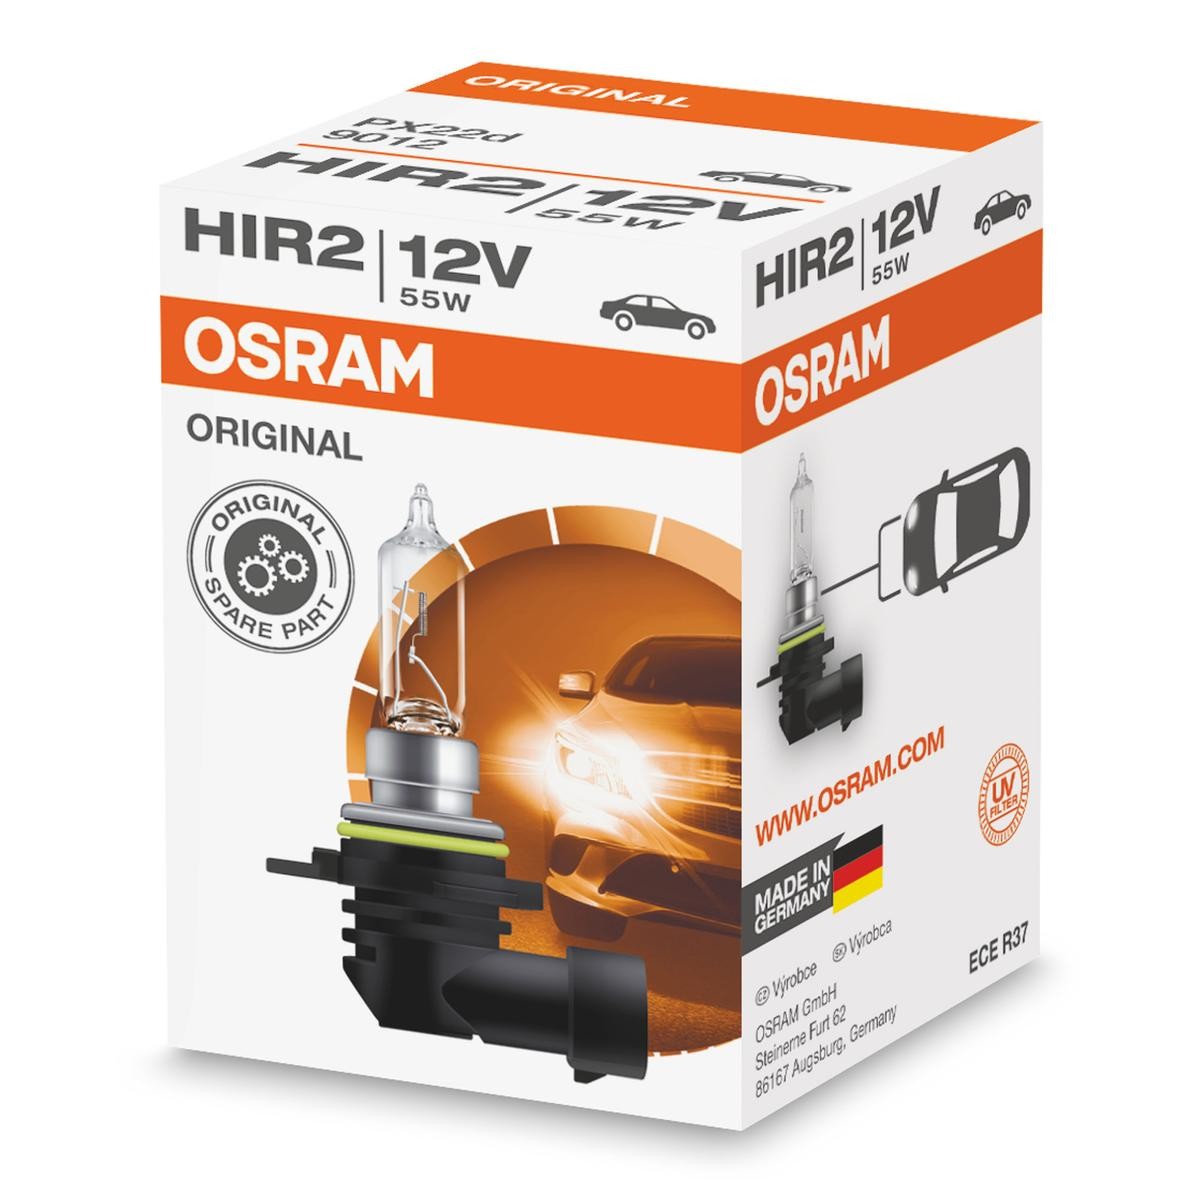 OSRAM 9012 Fernlichtlampe HIR2 12V 55W3200K Halogen ORIGINAL Chevy in Original Qualität